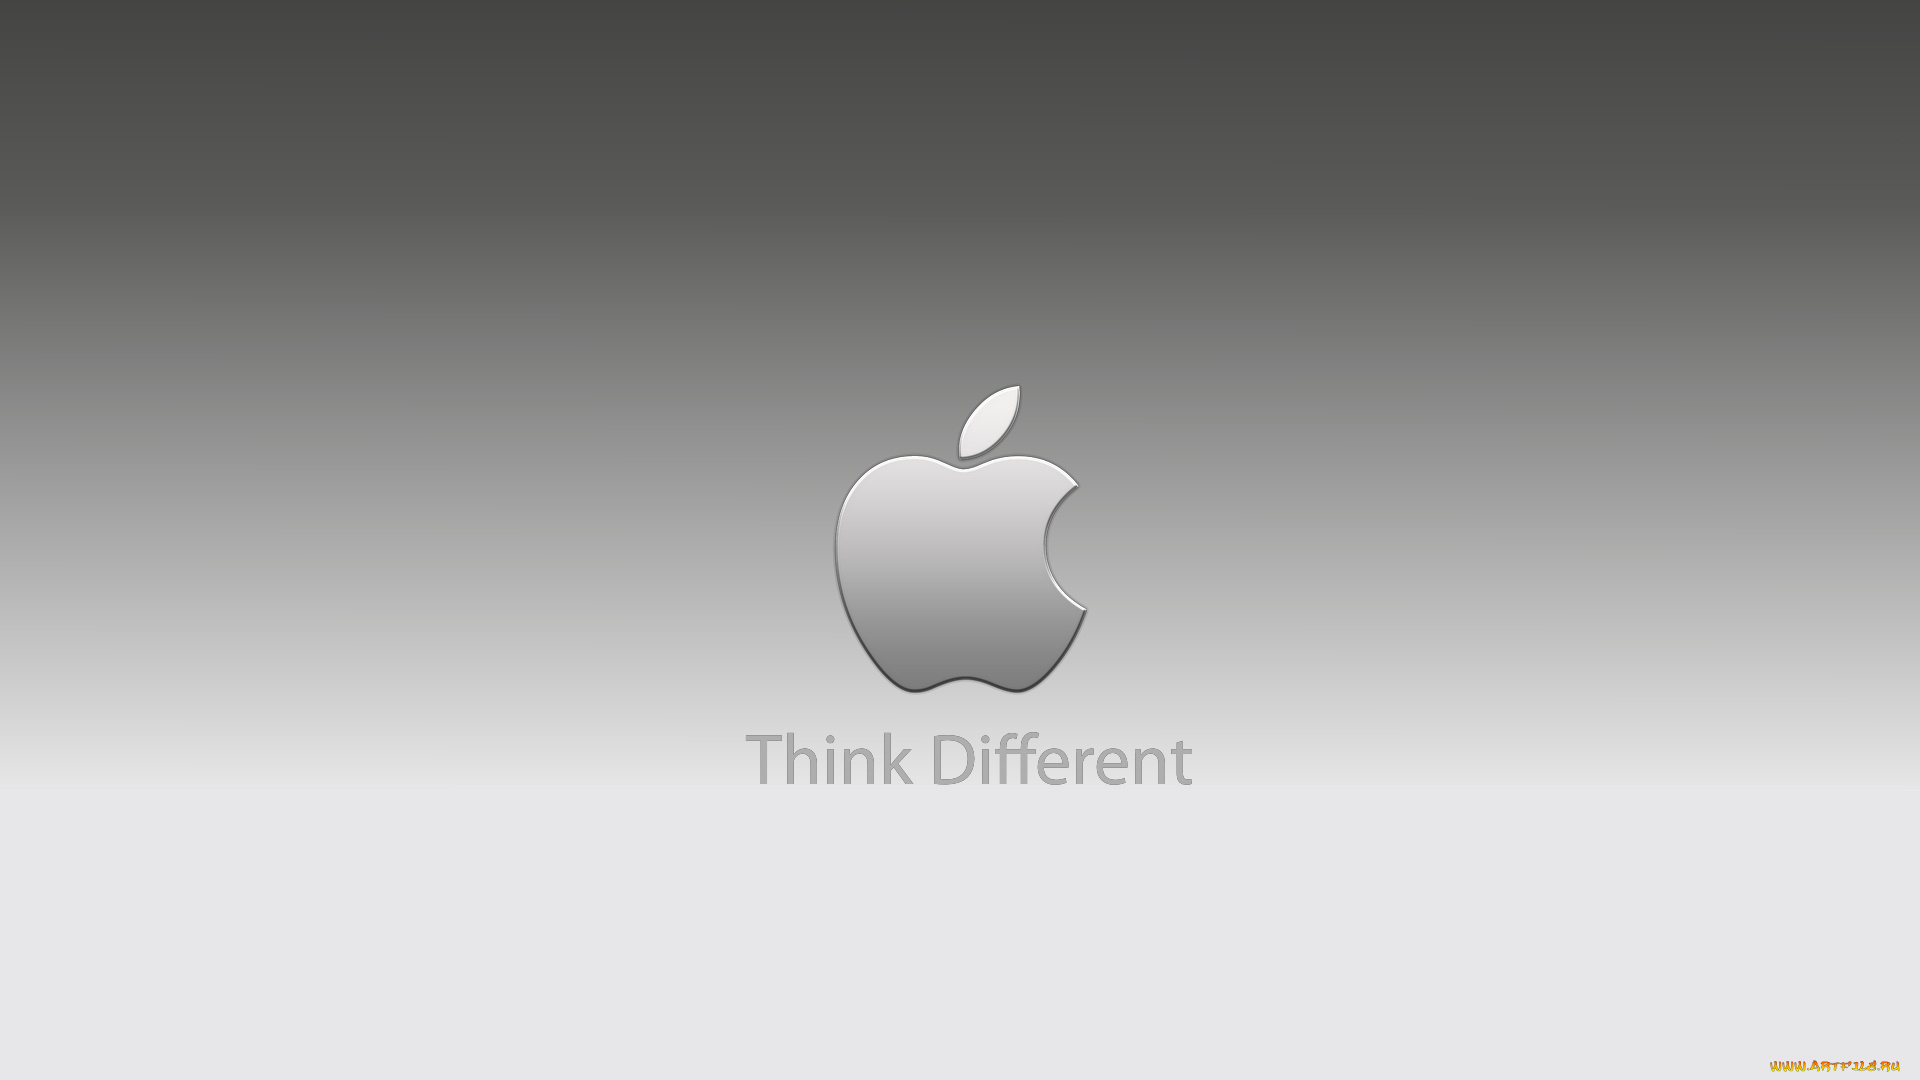 компьютеры, apple, слоган, девиз, надпись, логотип, яблоко, серый, фон